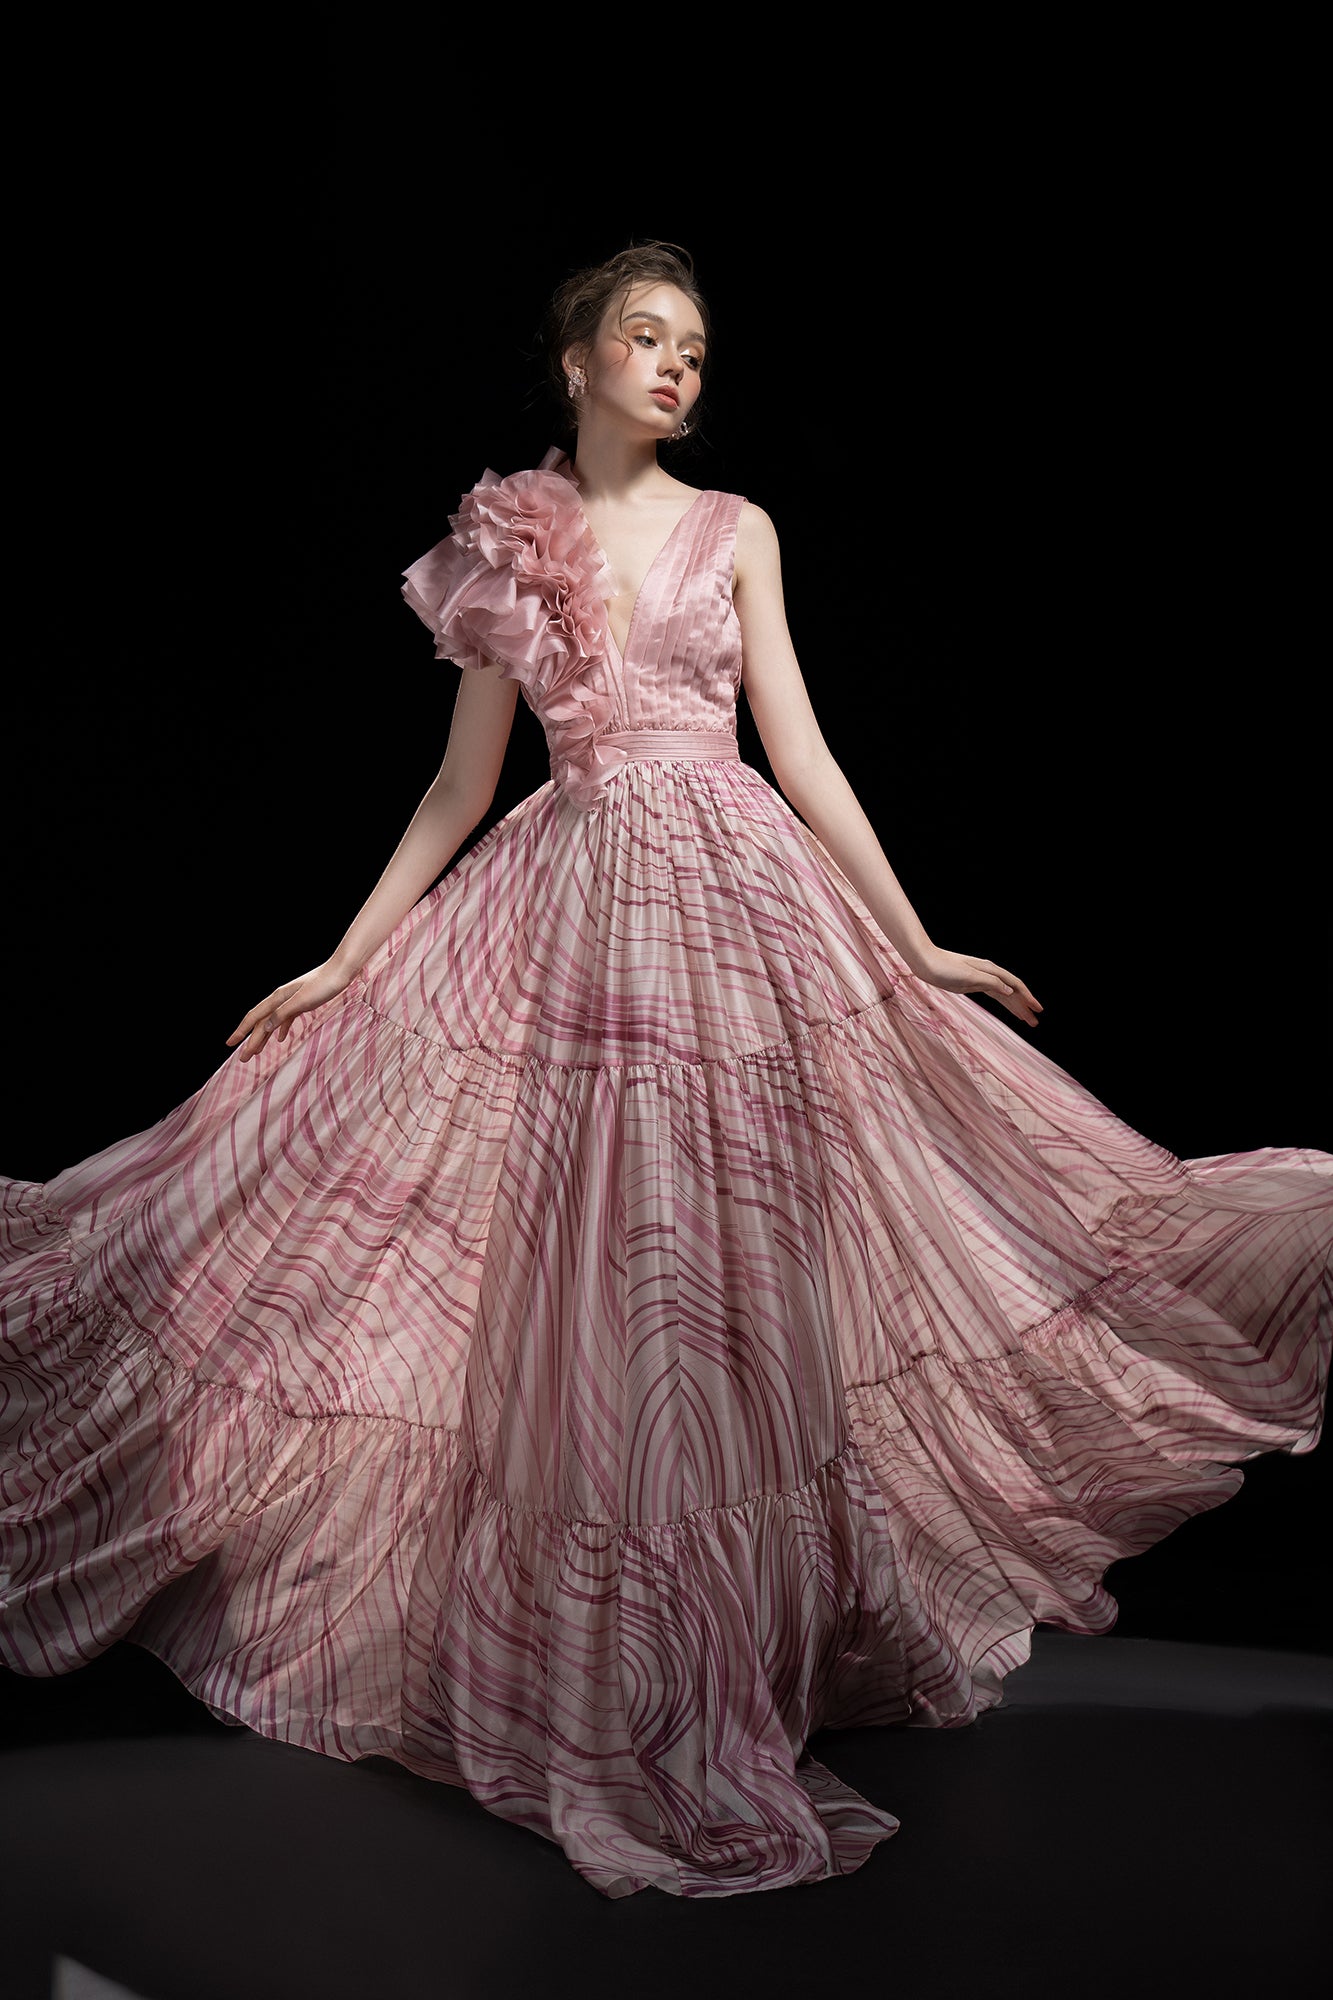 Tricia Shiny Silk wave dress